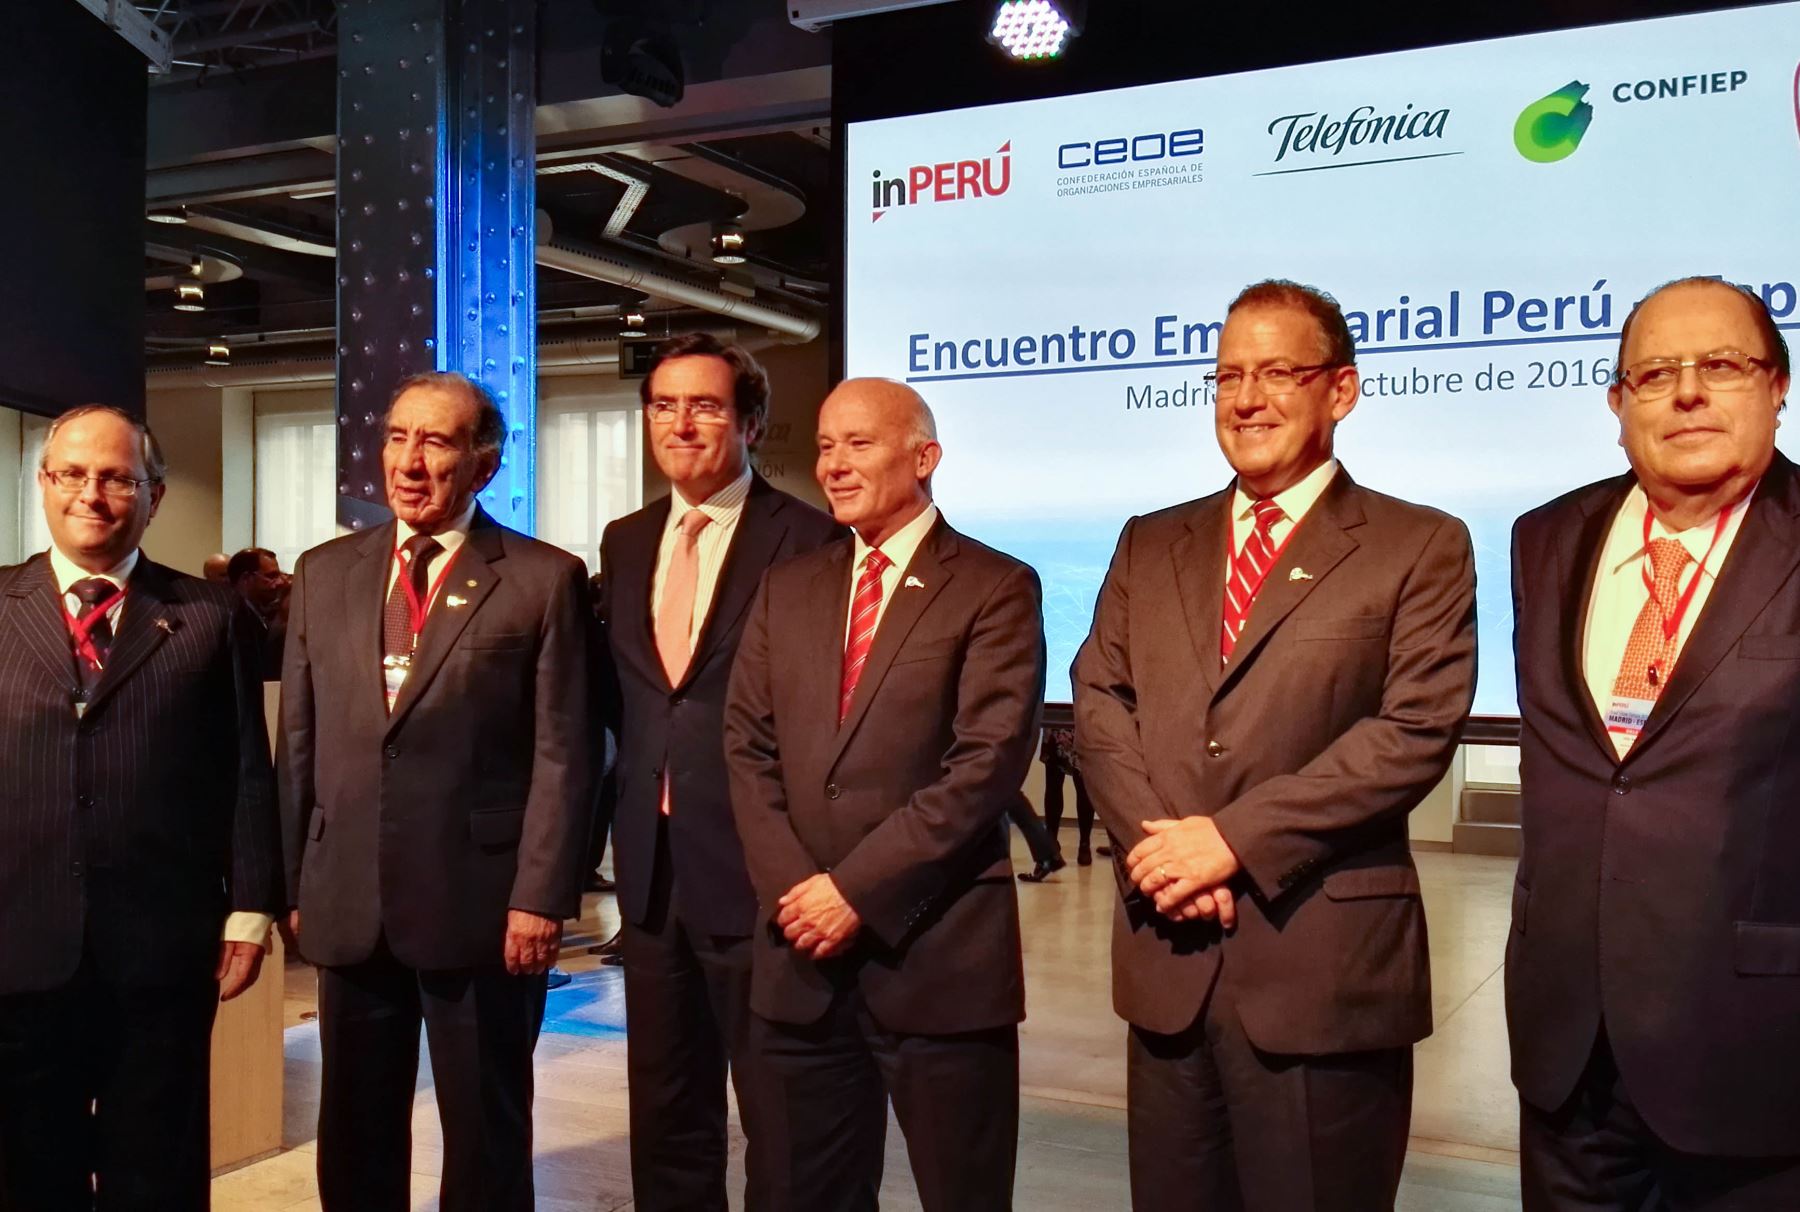 Más de 600 empresas españolas operan en Perú, destaca ministro Ferreyros